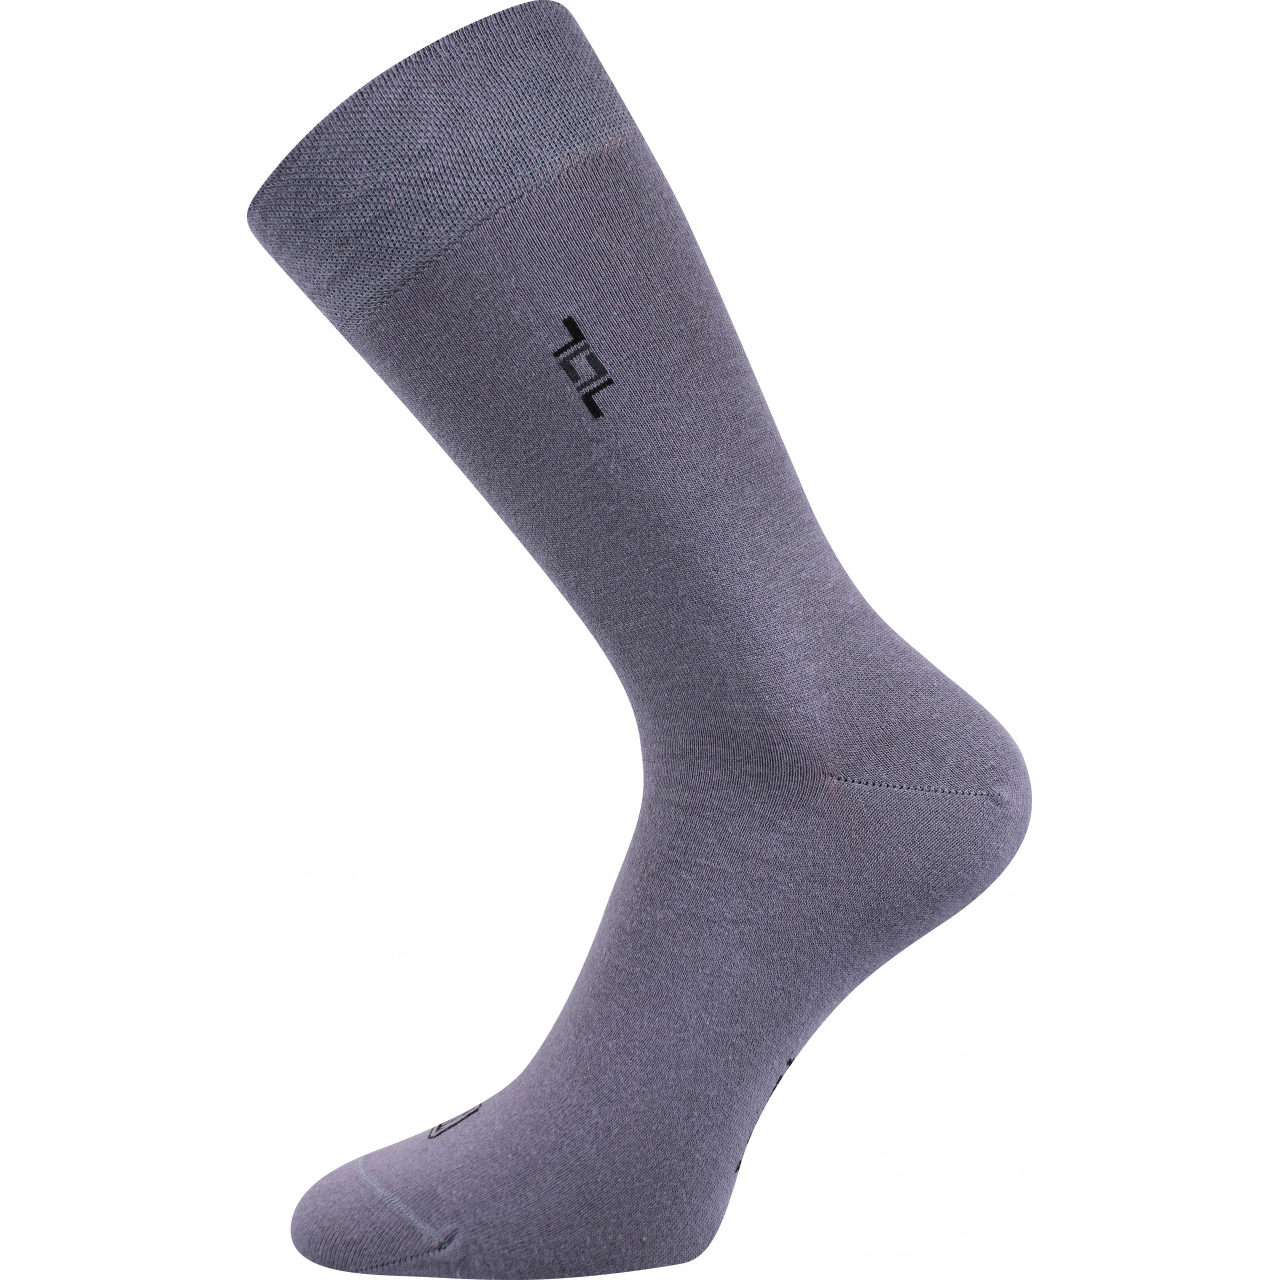 Ponožky pánské společenské Lonka Despok - šedé, 39-42